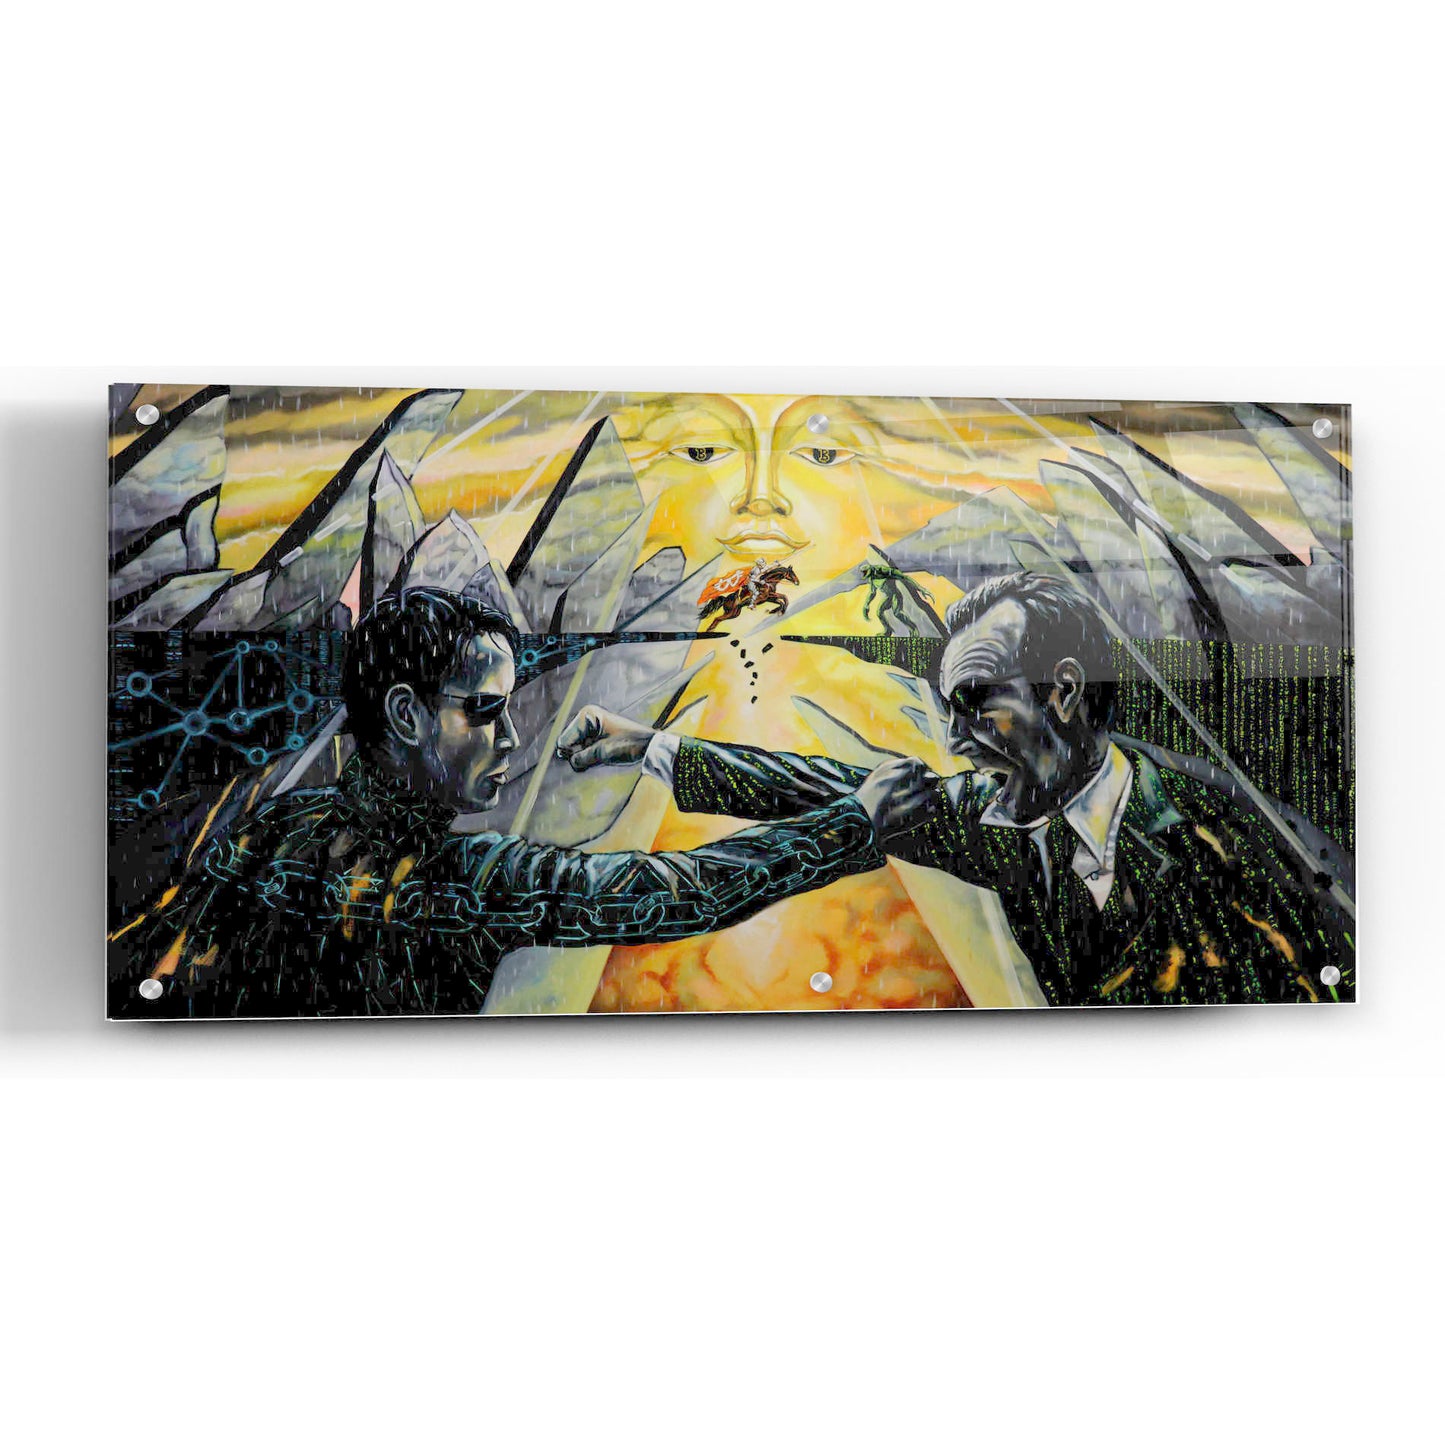 Epic Art 'Battle' by Jan Kasparec, Acrylic Glass Wall Art,24x12